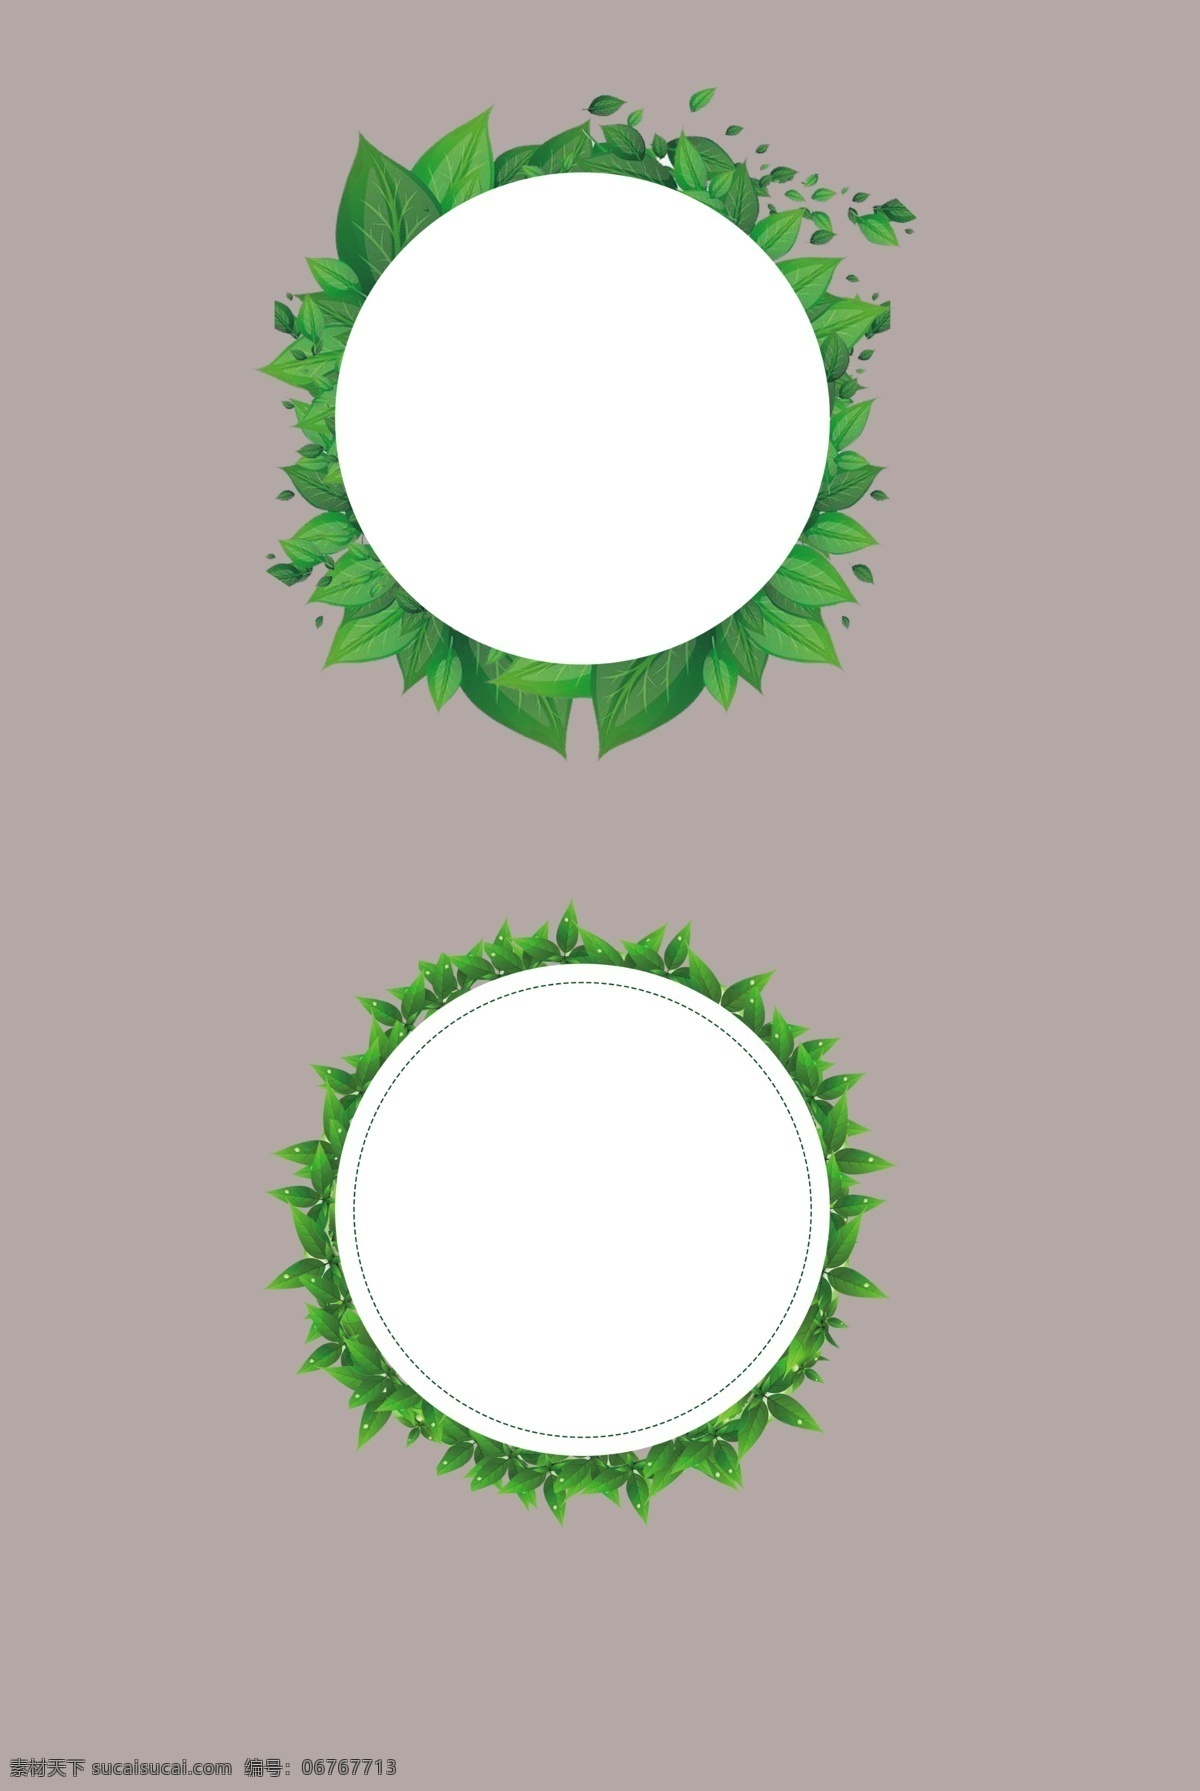 圆形树叶围绕 圆形 树叶 围绕 标志